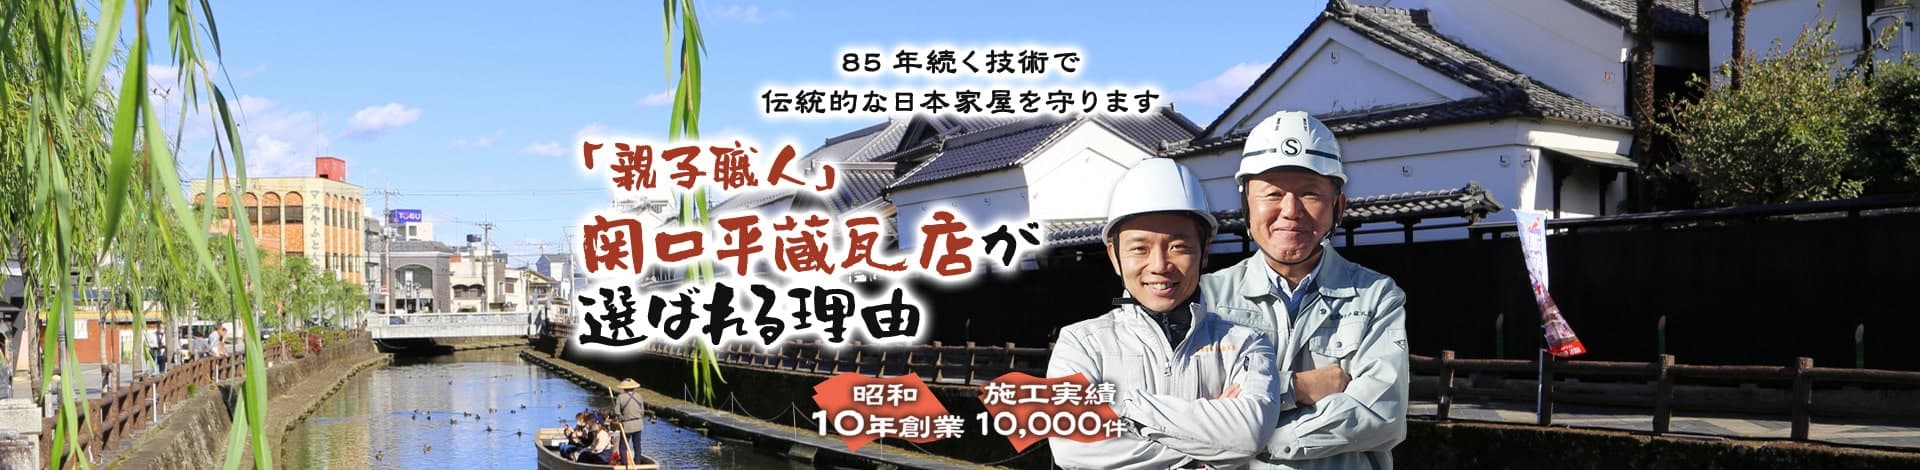 85年続く技術で伝統的な日本家屋を守ります「親子職人」関口平蔵瓦店が選ばれる理由昭和10年創業施工実績10,000件